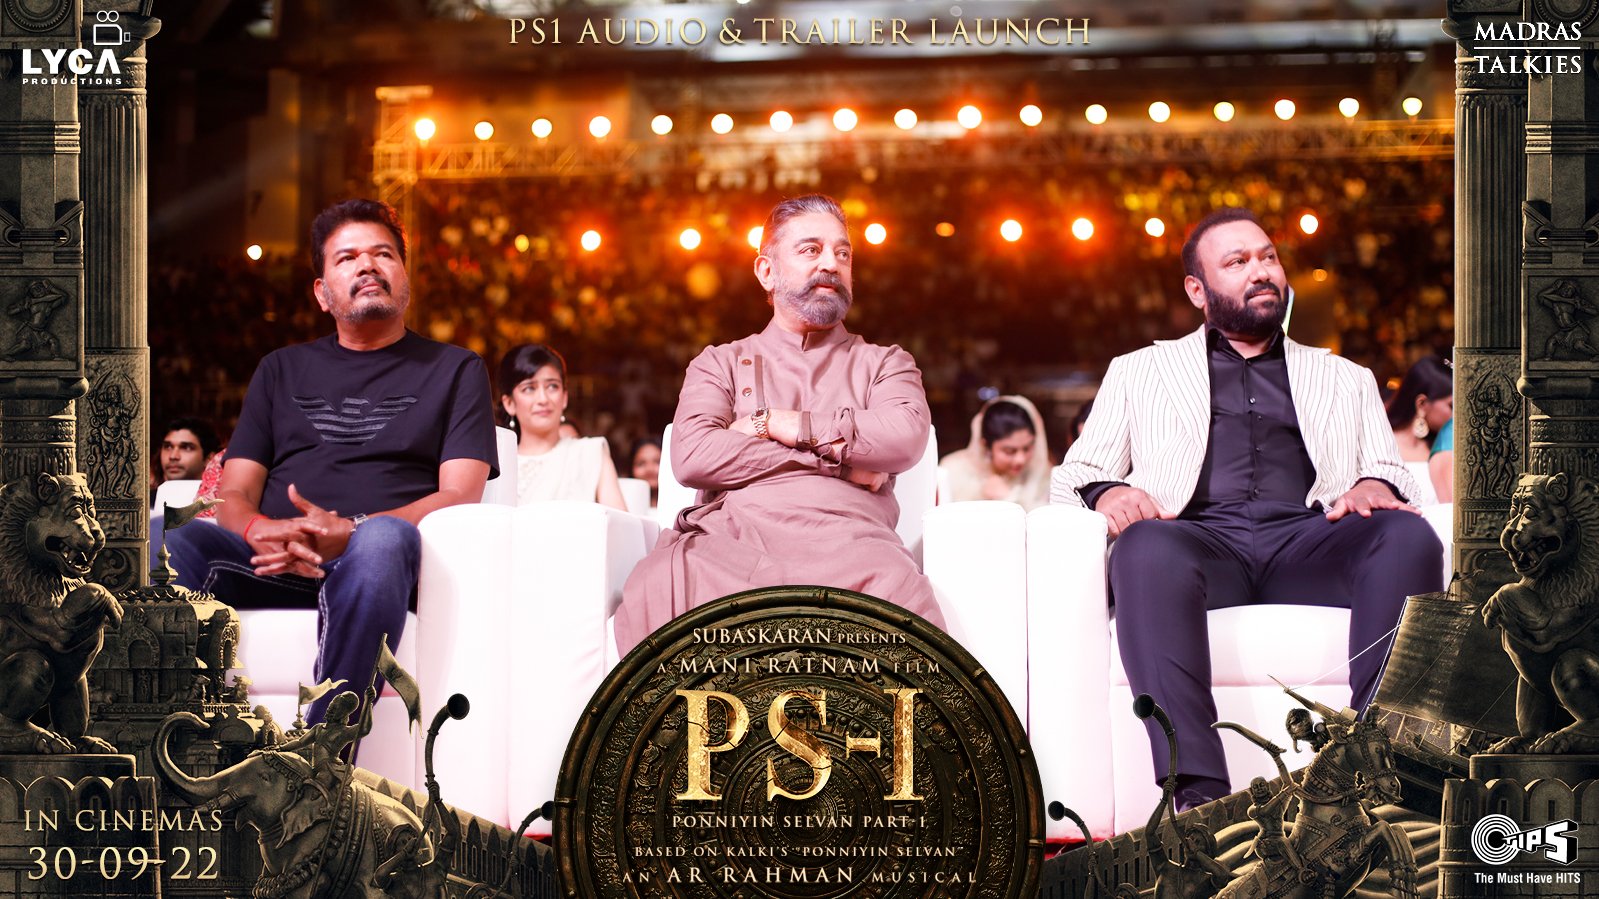 PS1 trailer launch-shankar, kamal haasan